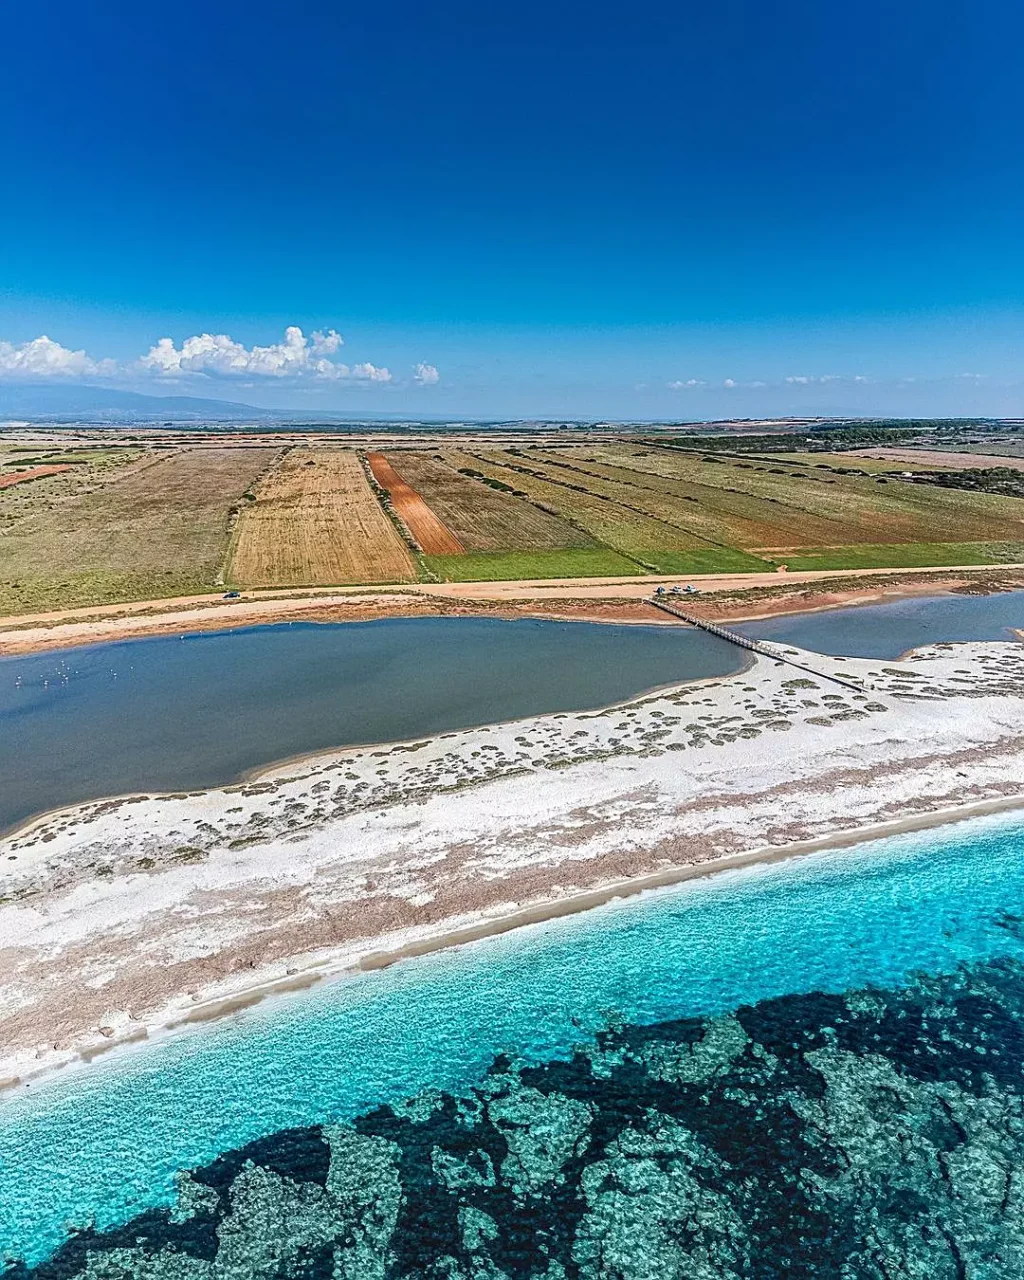 Mari Ermi Beach: A joia escondida da costa oeste da Sardenha